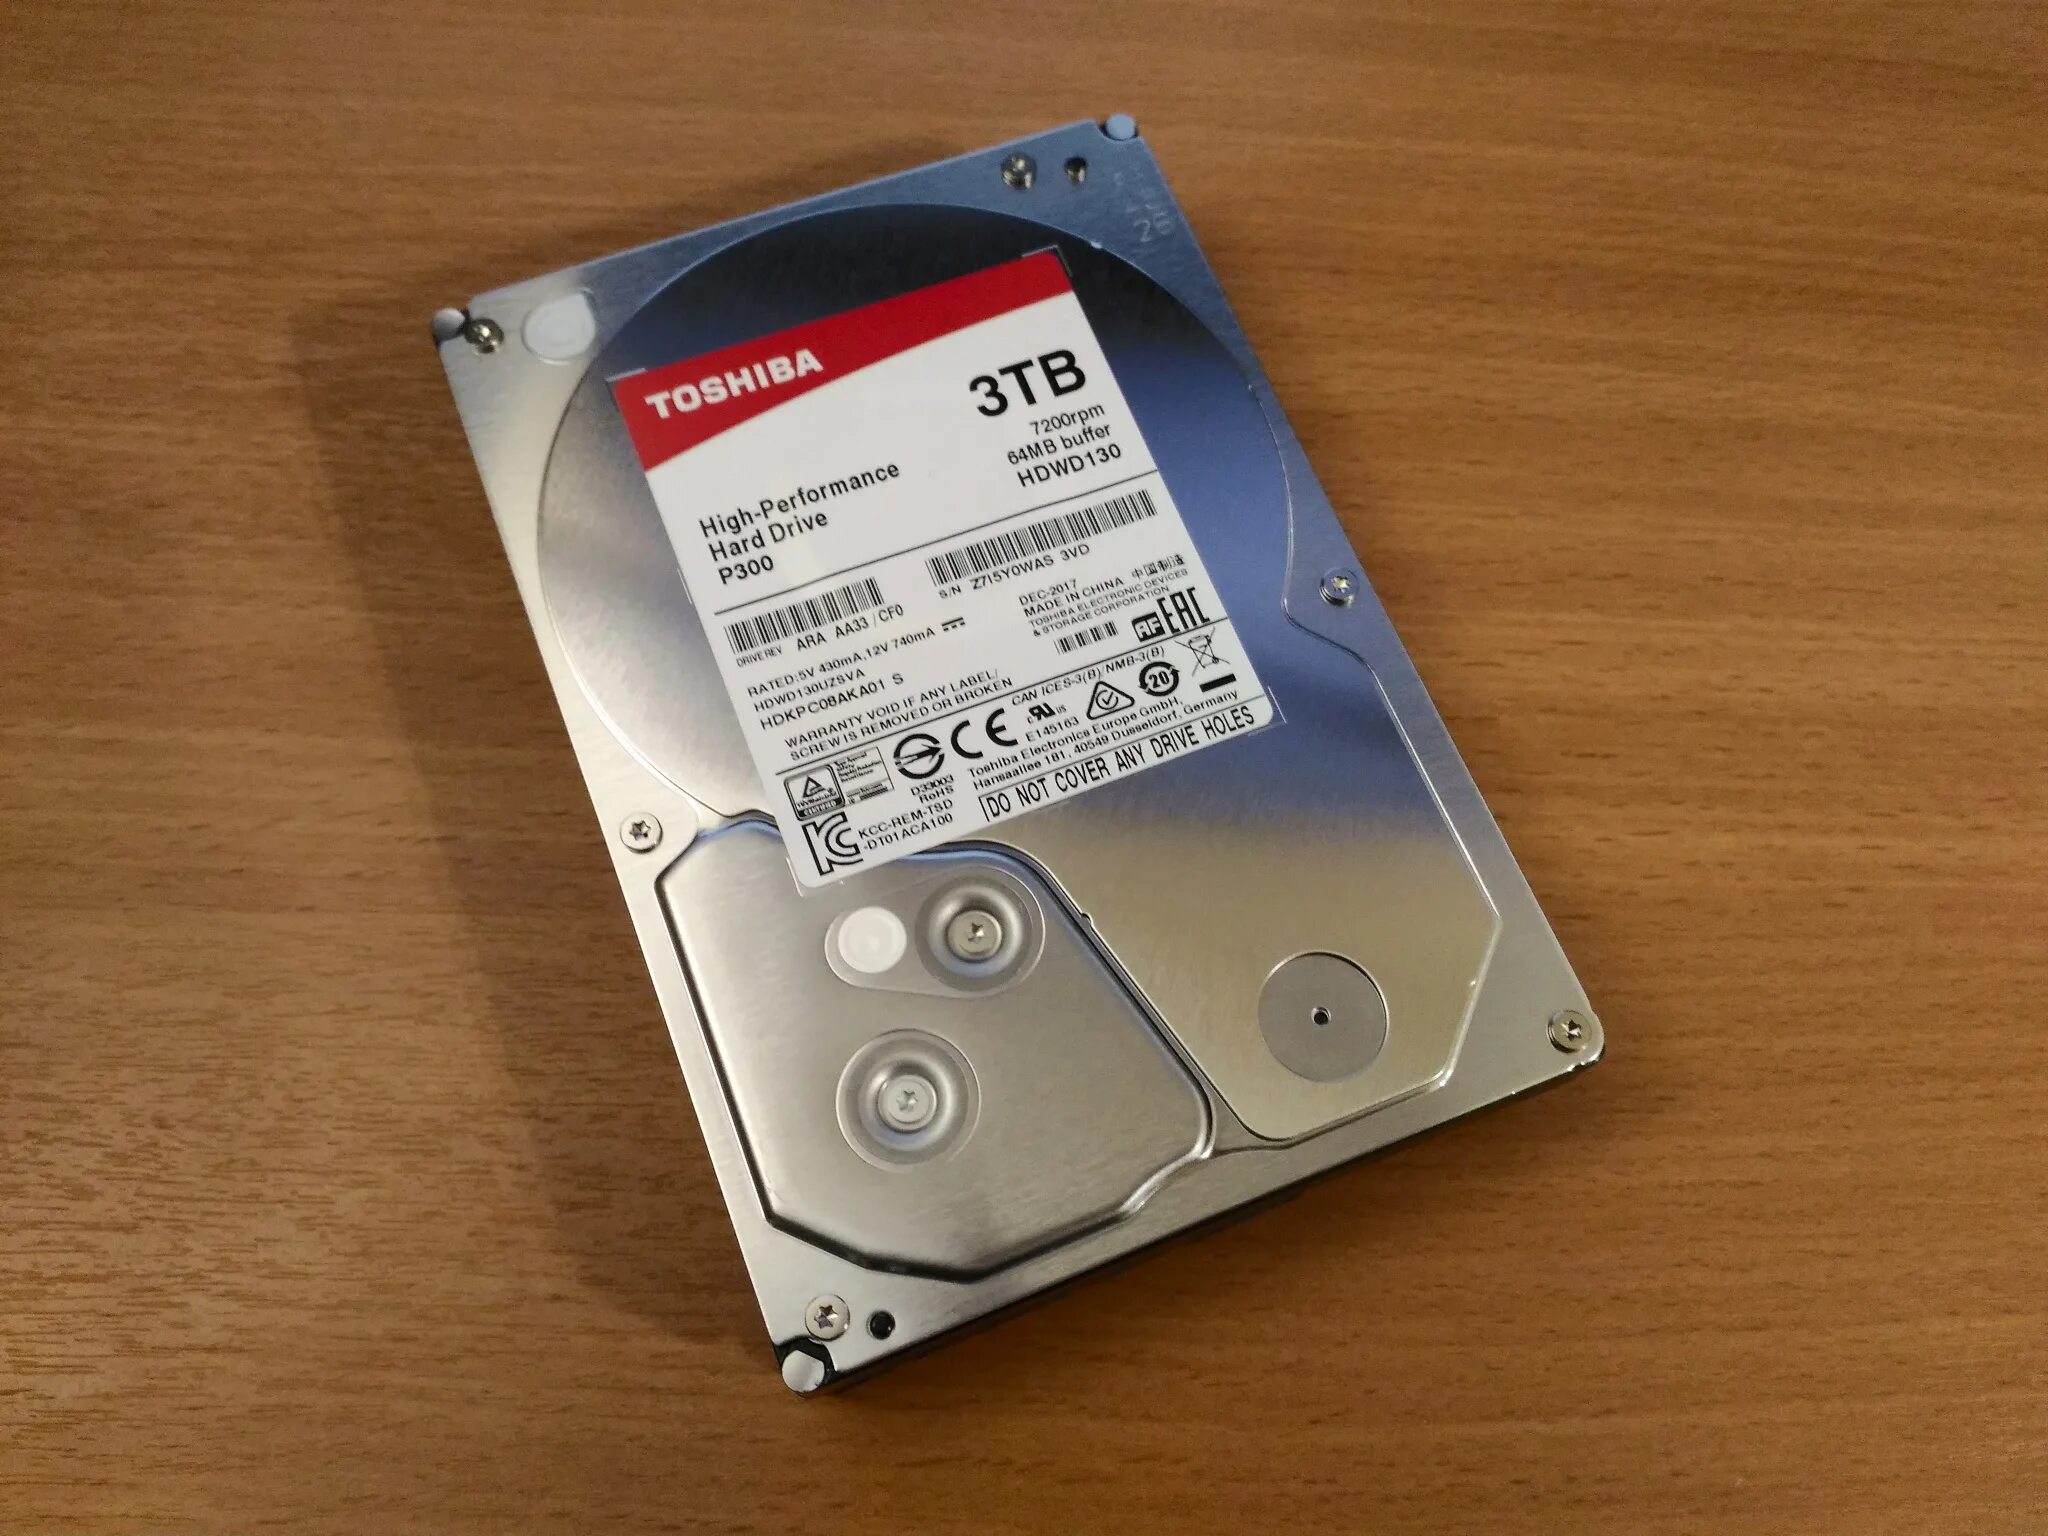 9c 3 64. 3 ТБ жесткий диск Toshiba p300. HDD Toshiba hdwd130 3tb. Жесткий диск Toshiba SATA-III 3tb hdwd130uzsva p300 (7200rpm) 64mb 3.5". Toshiba HDD 3tb 64mb 7200rpm.